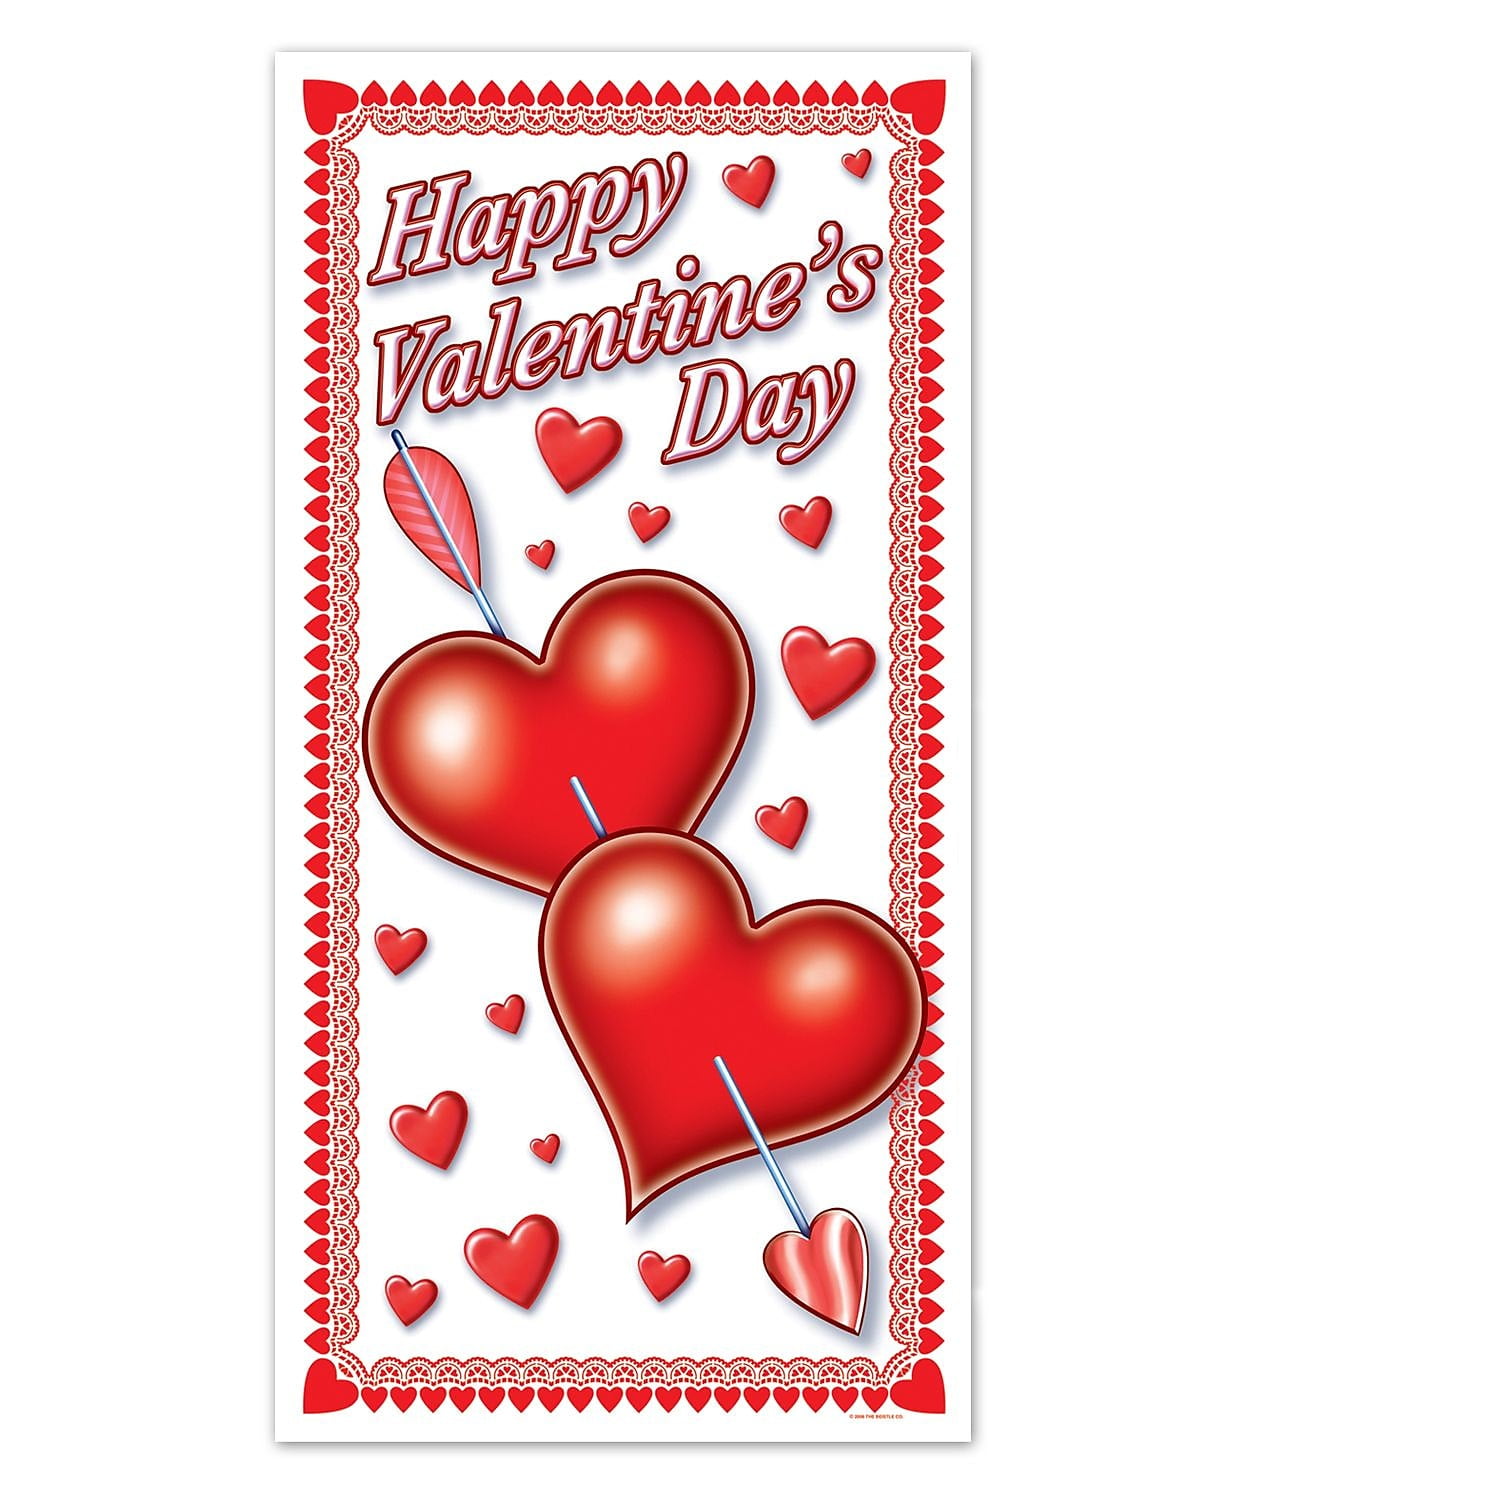 Beistle 30 x 5' Happy Valentines Day Door Cover 3/Pack 70010 